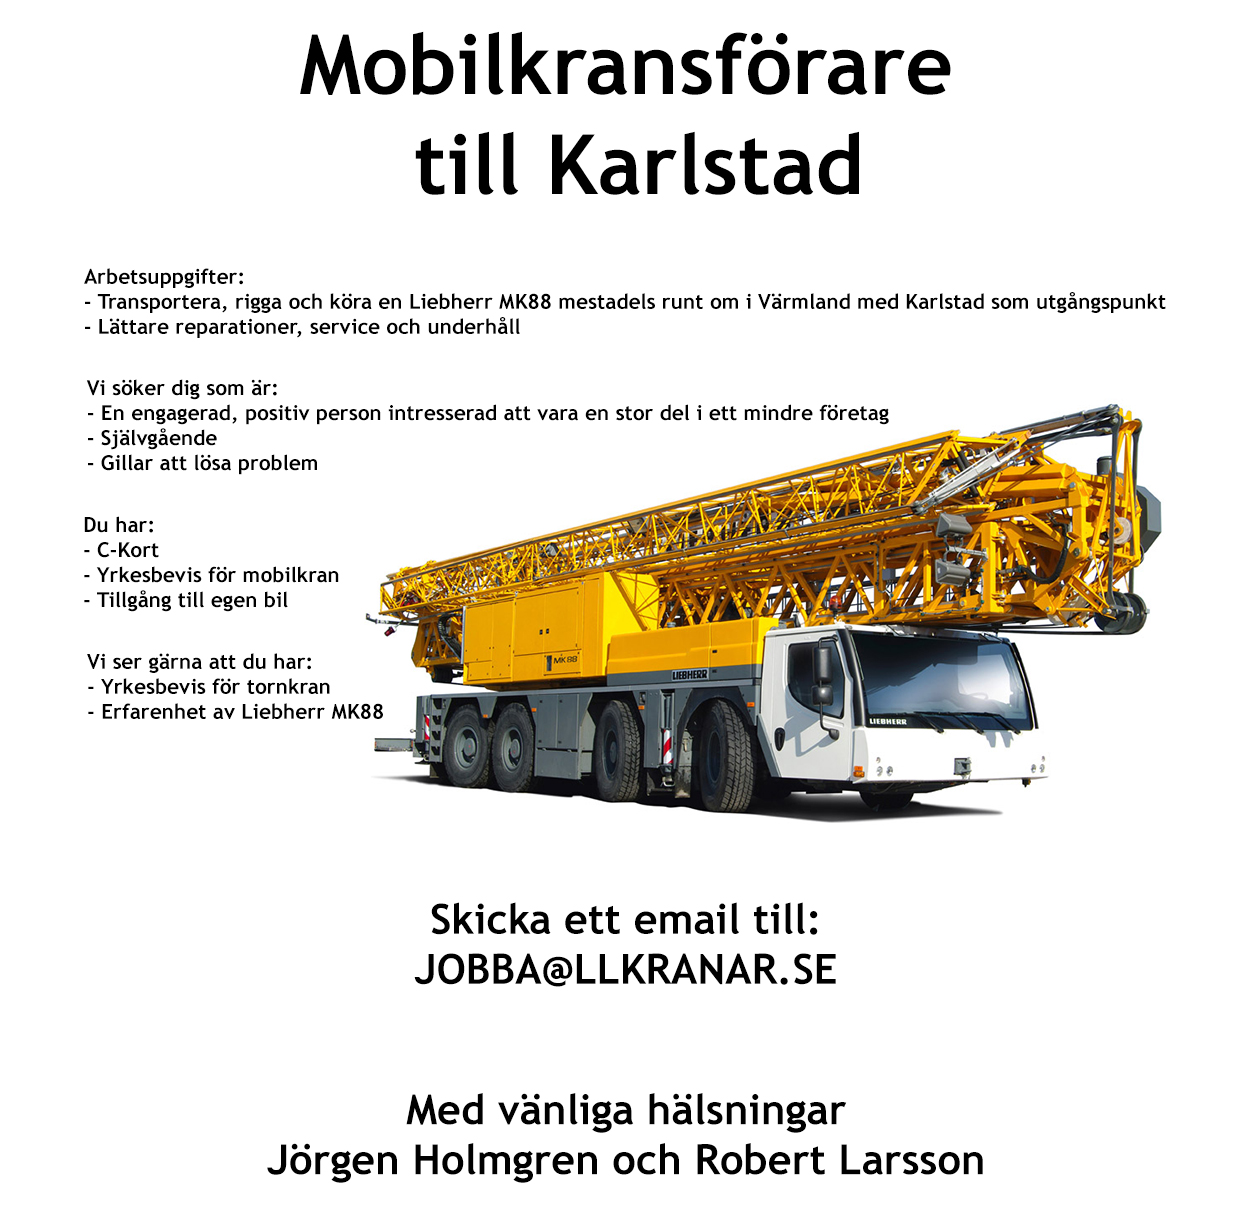 Mobilkransförare till Karlstad - Skicka email till JOBBA@LLKRANAR.SE